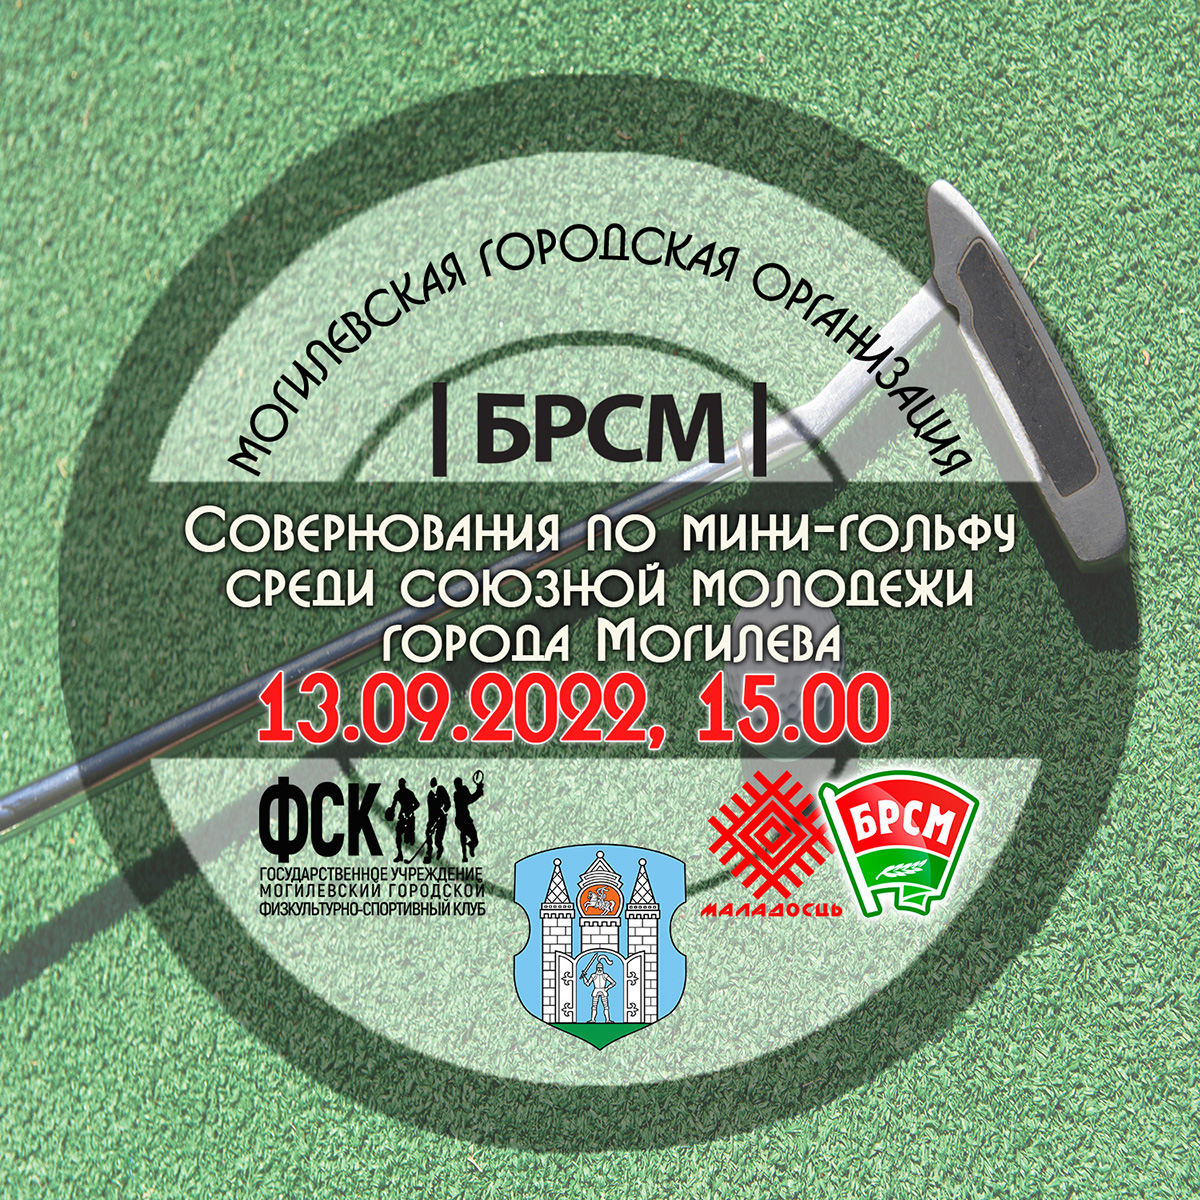 Соревнования по мини-гольфу пройдут в Могилеве 13 сентября